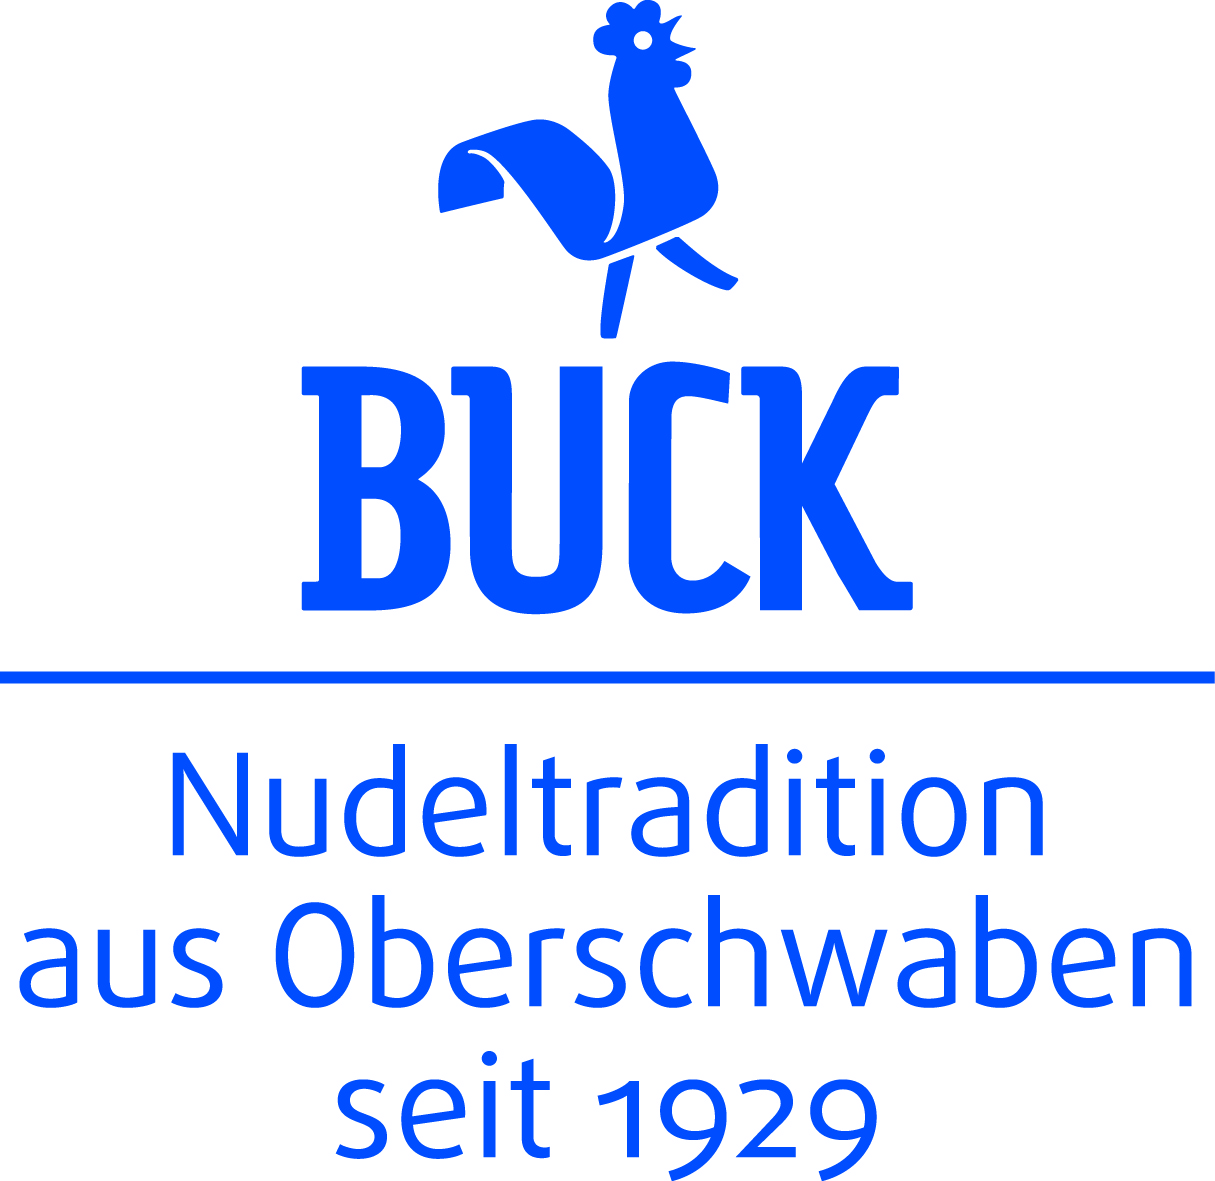 Buck GmbH & Co. KG, Nudelspezialitäten